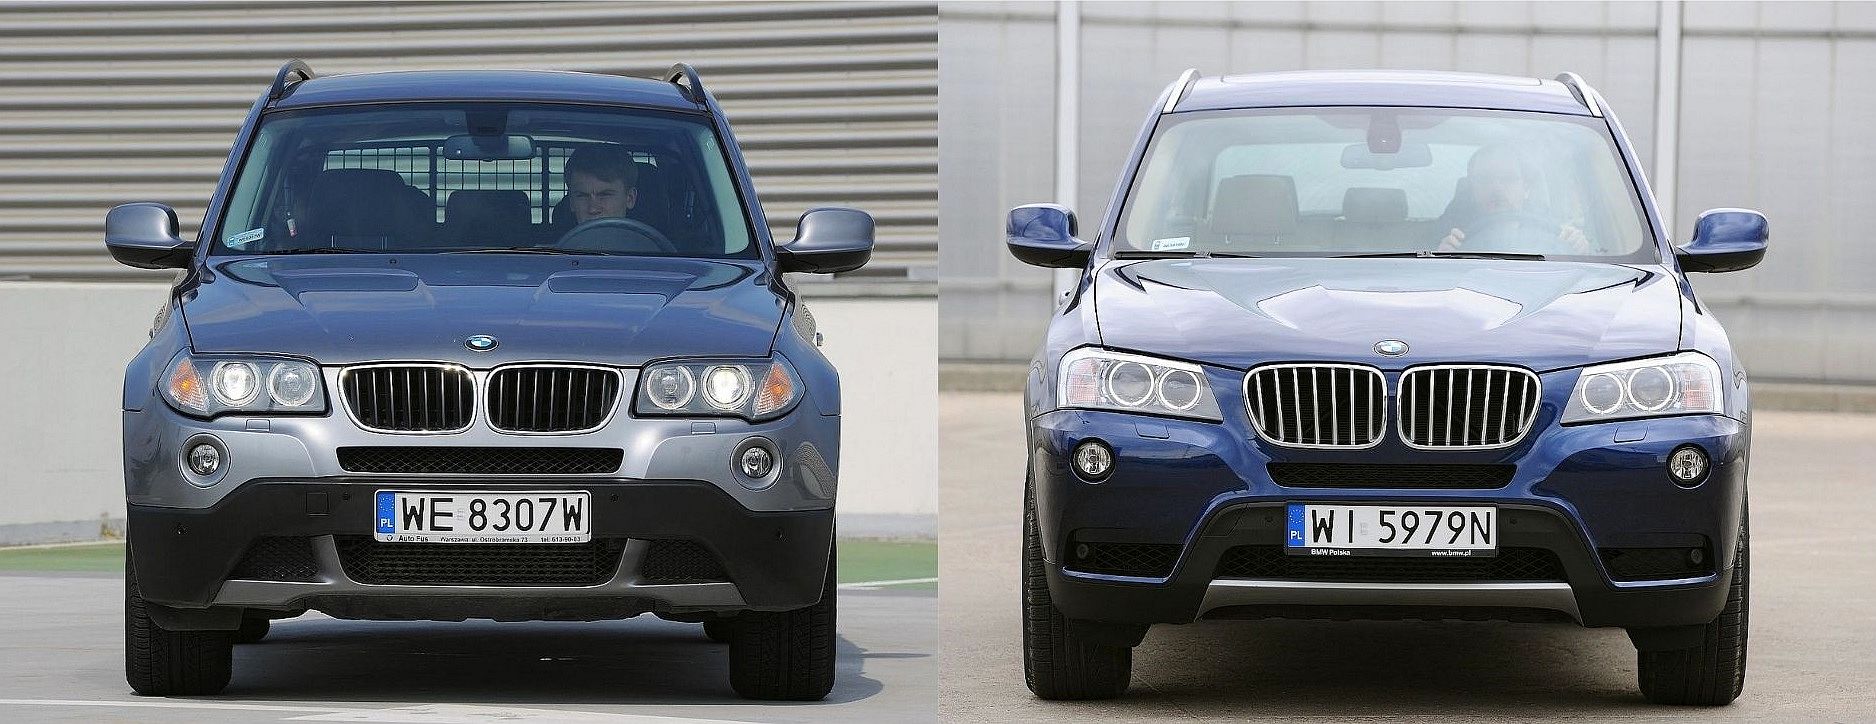 Używane BMW X3 I (E83) i BMW X3 II (F25) którą generację